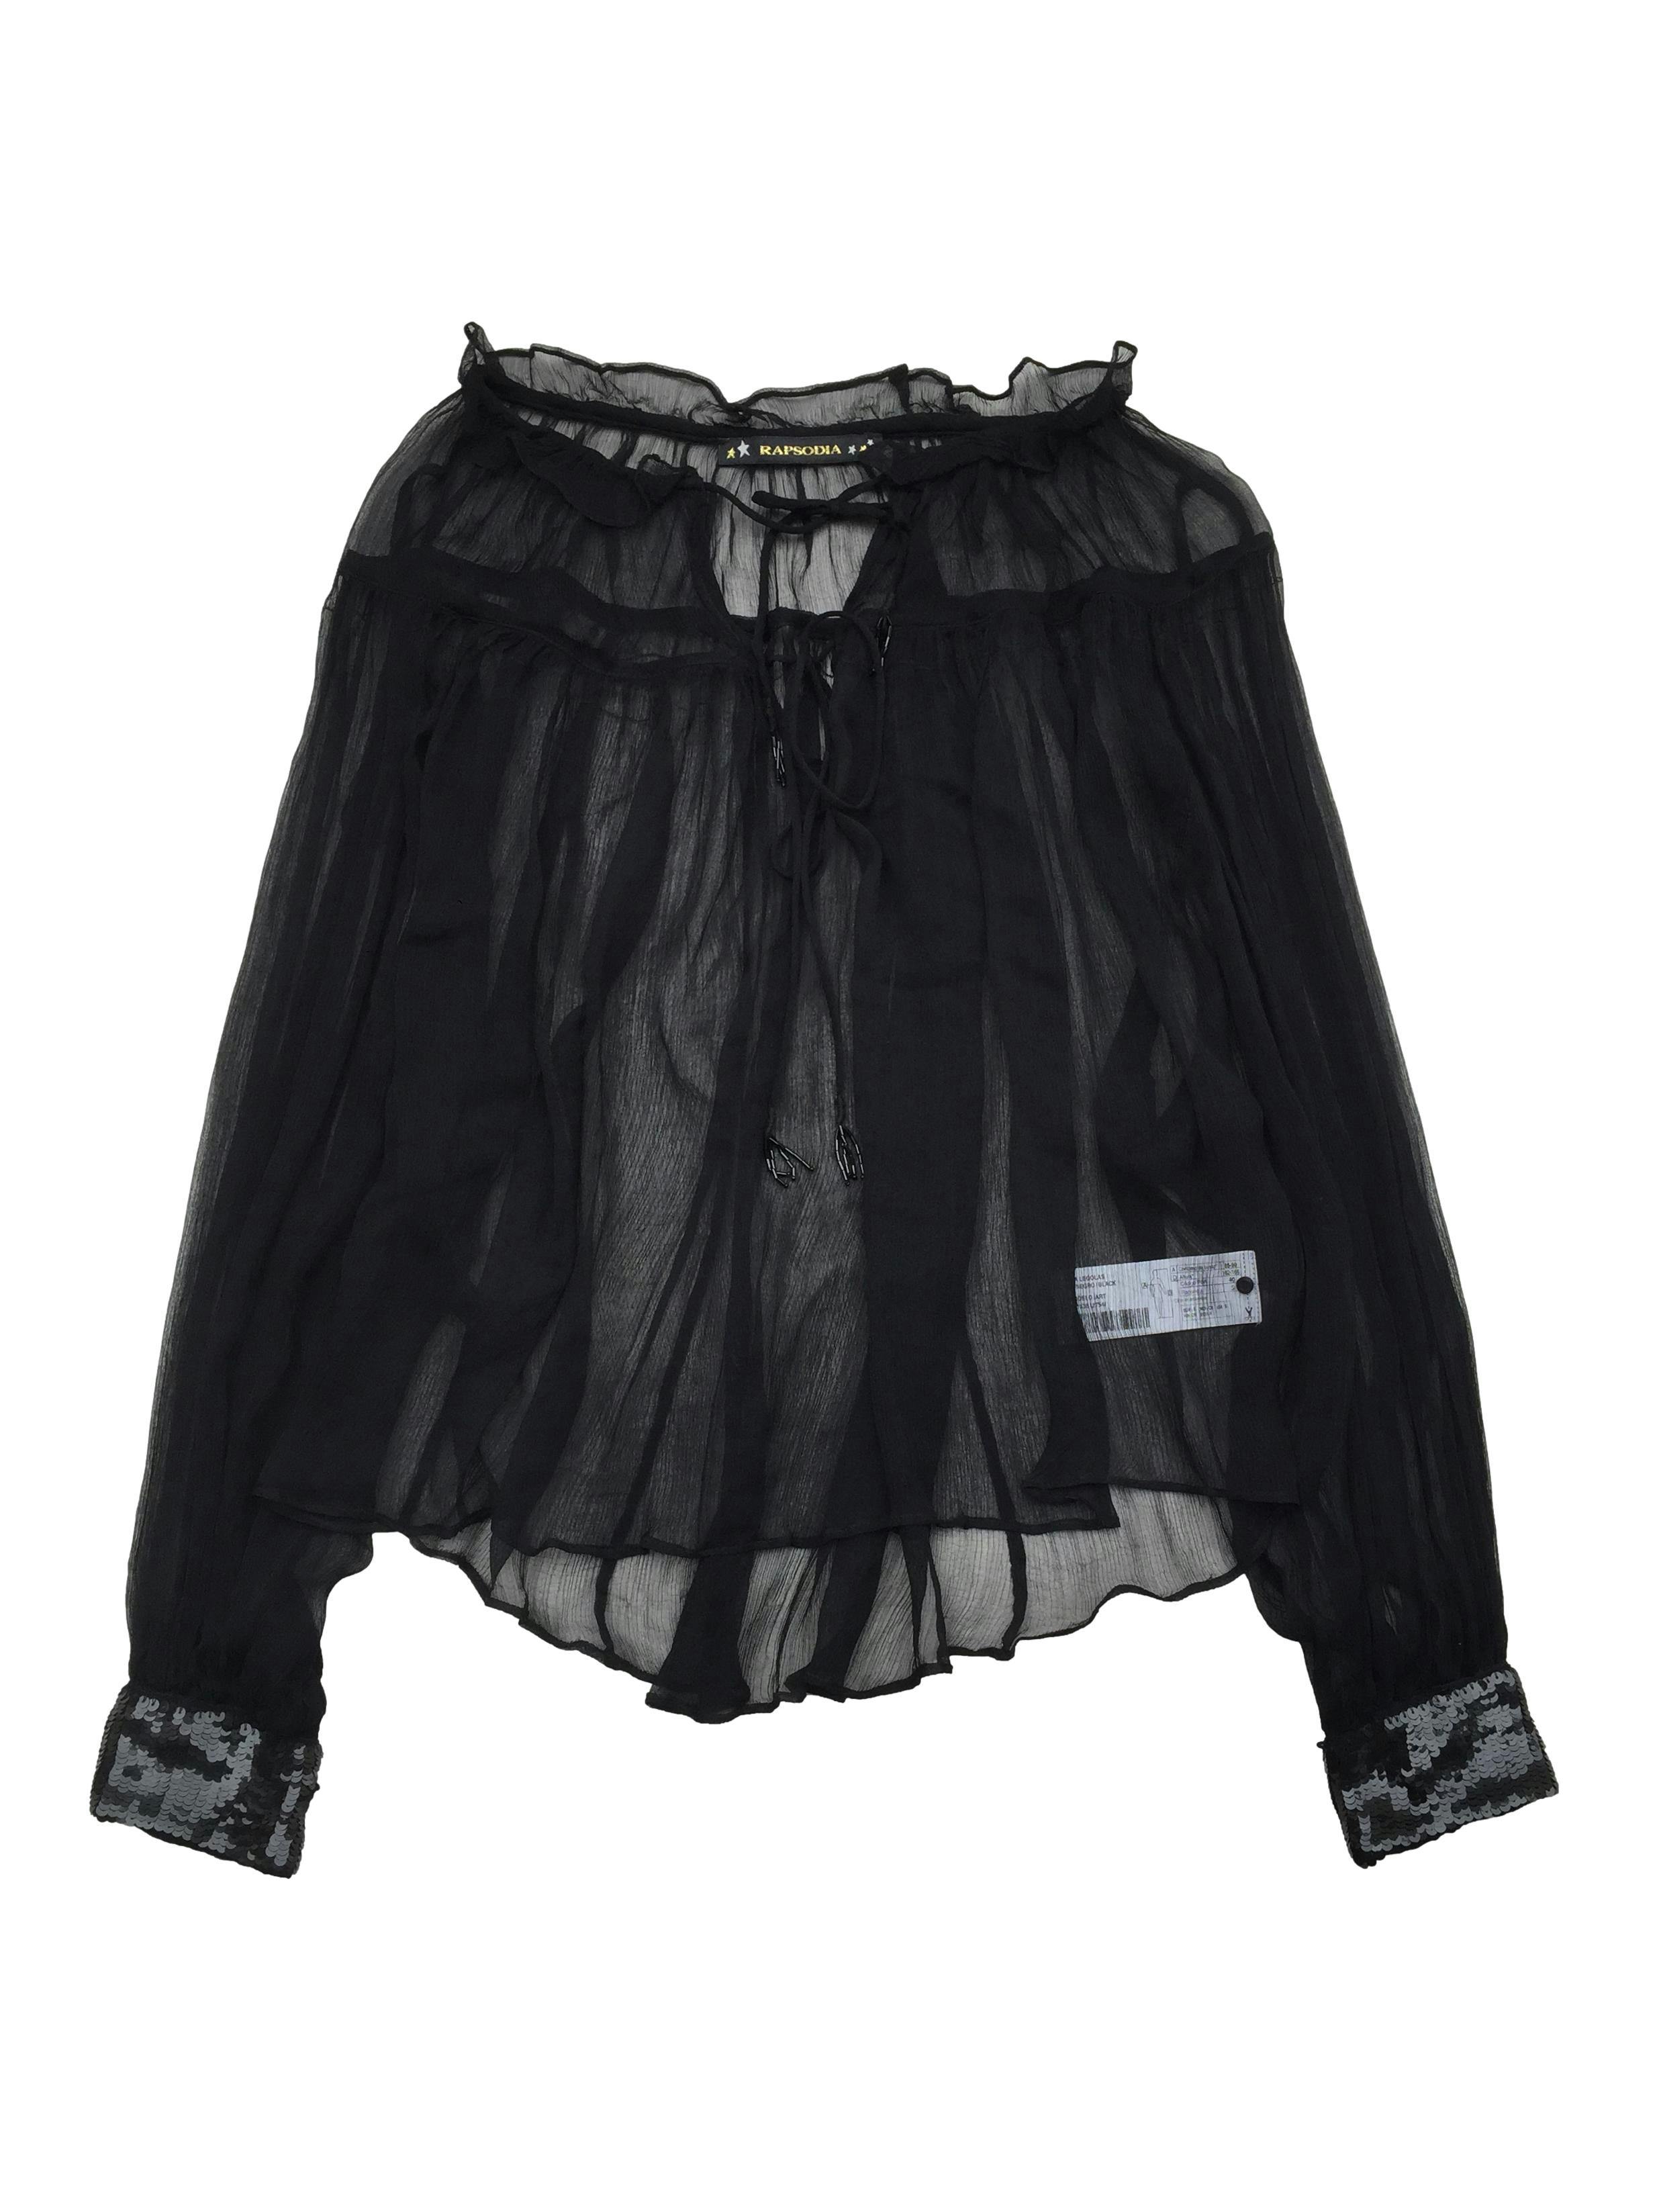 Blusa oversize Rapsodia de gasa negra con escote en V, cintos, mangas ranglán y lentejuelas en puños. Precio original S/400. Busto 150cm, Largo 55cm.